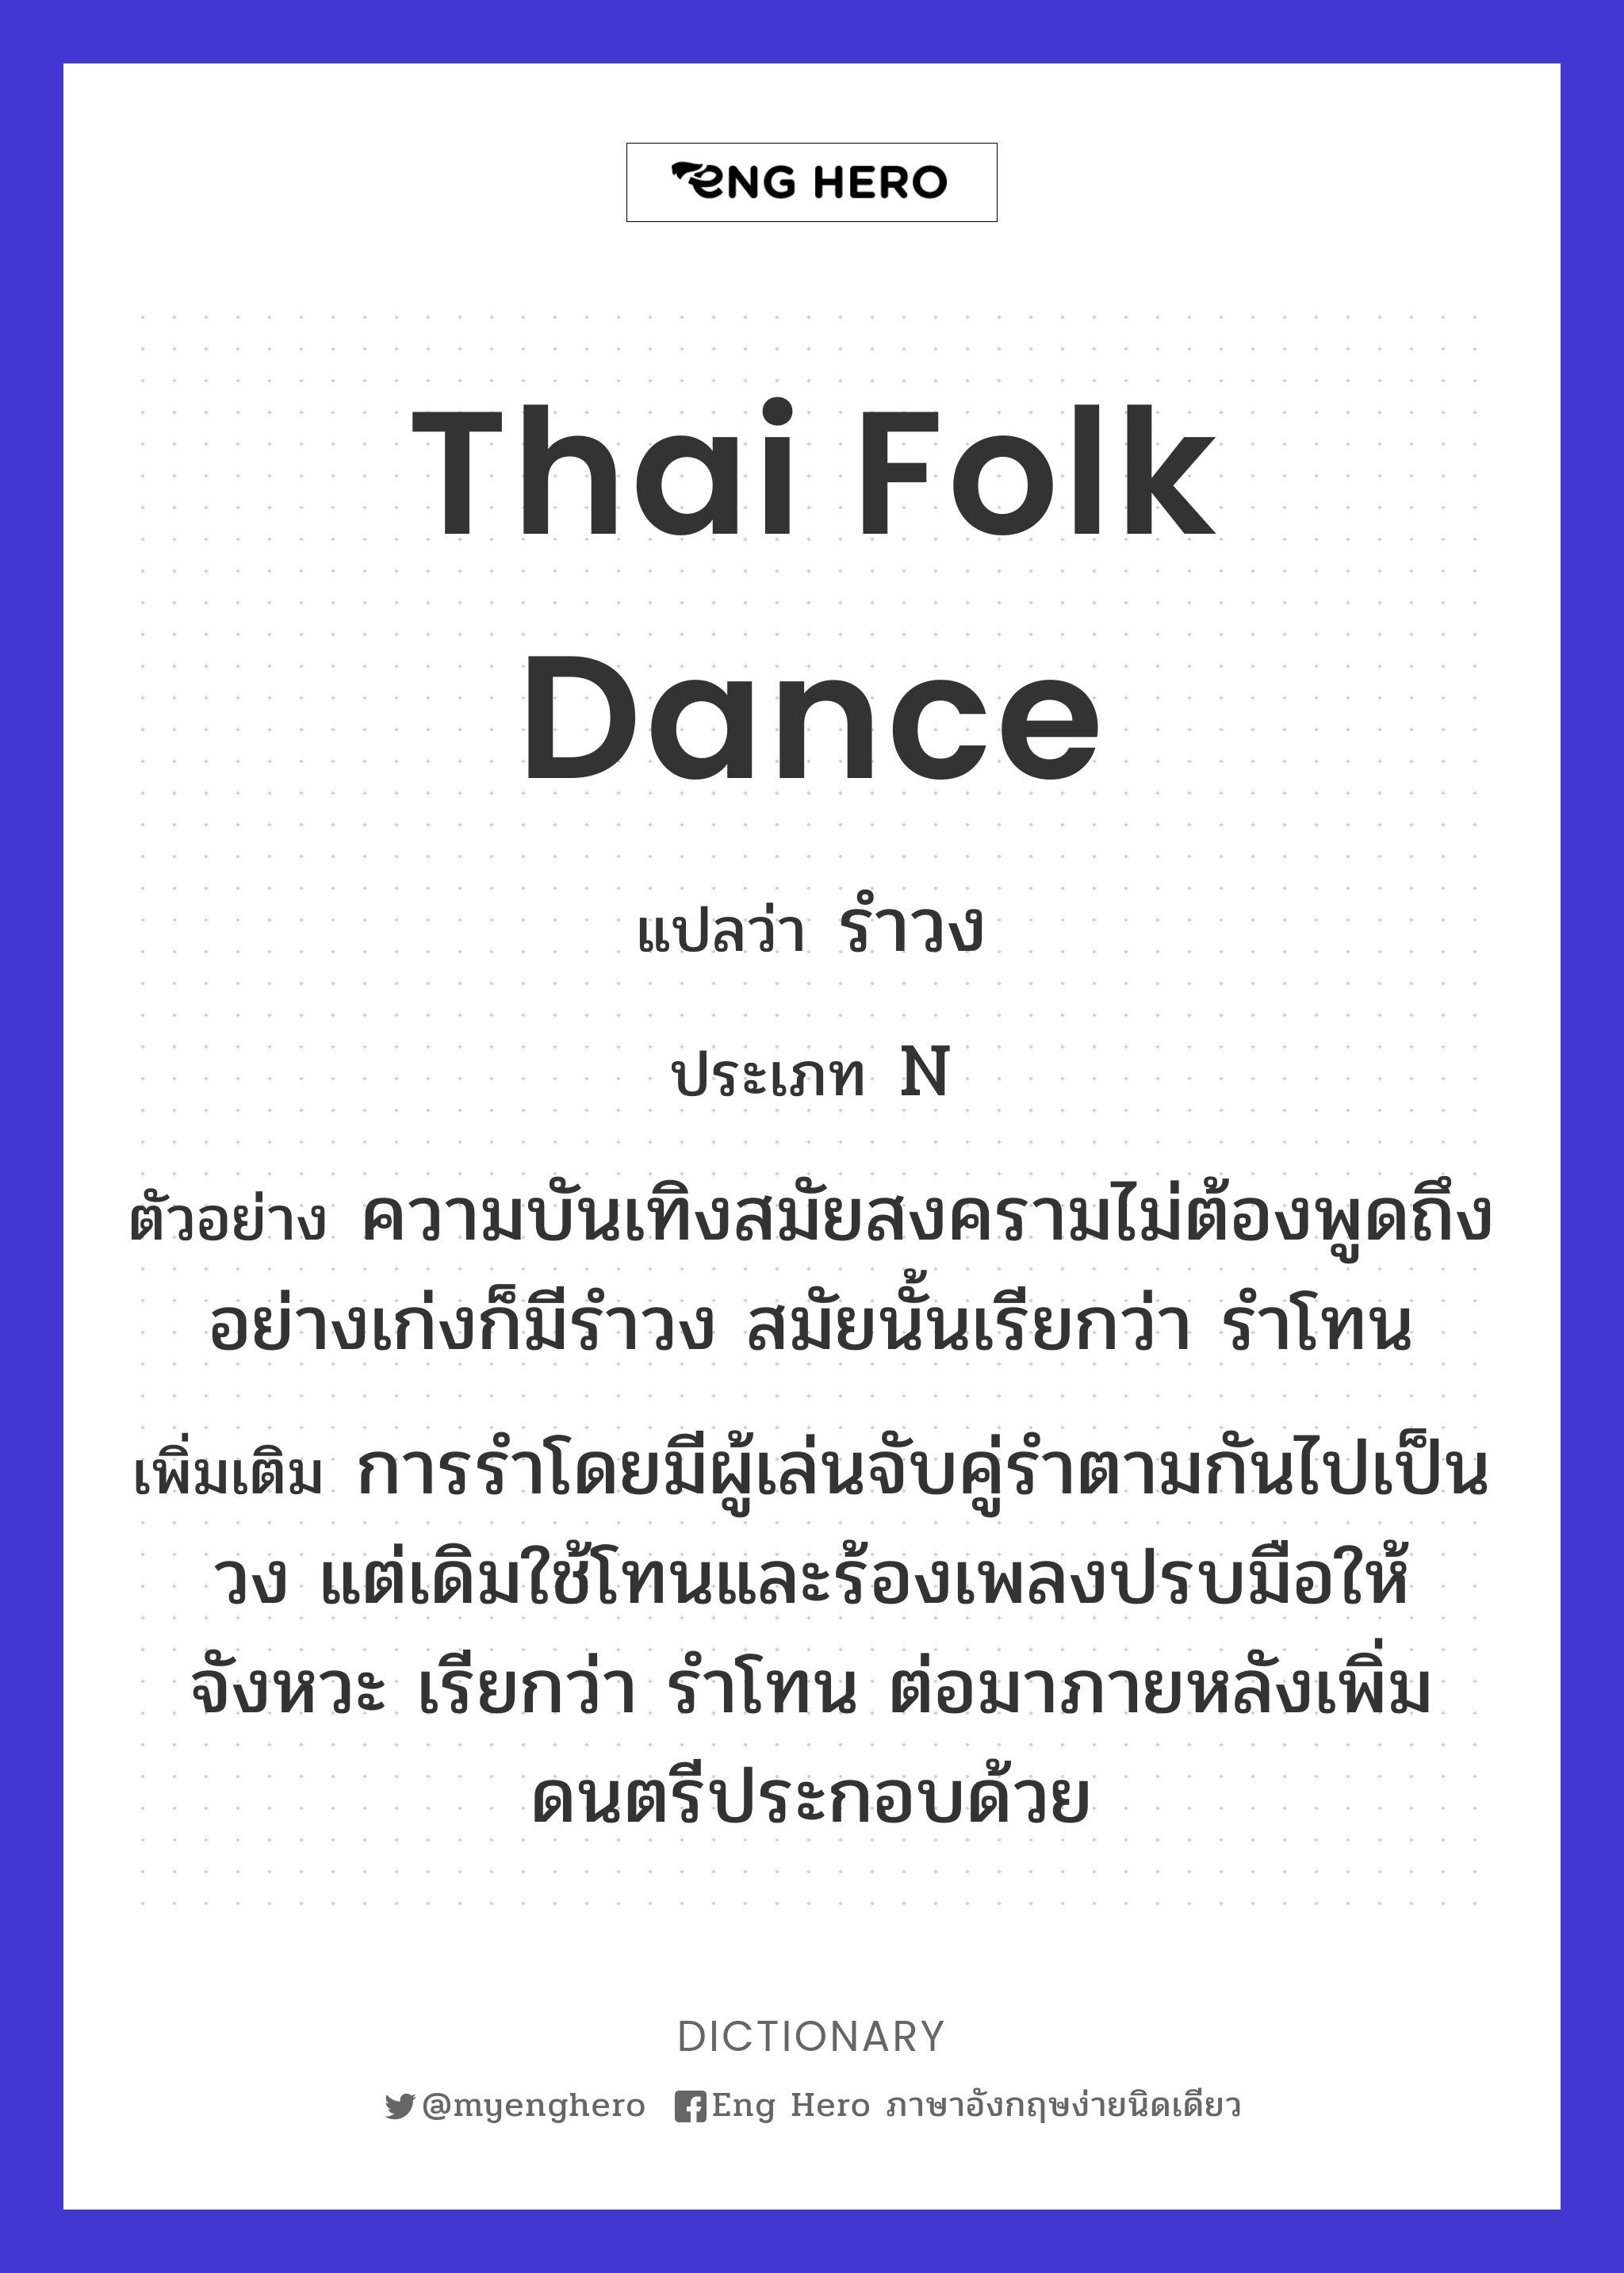 Thai folk dance